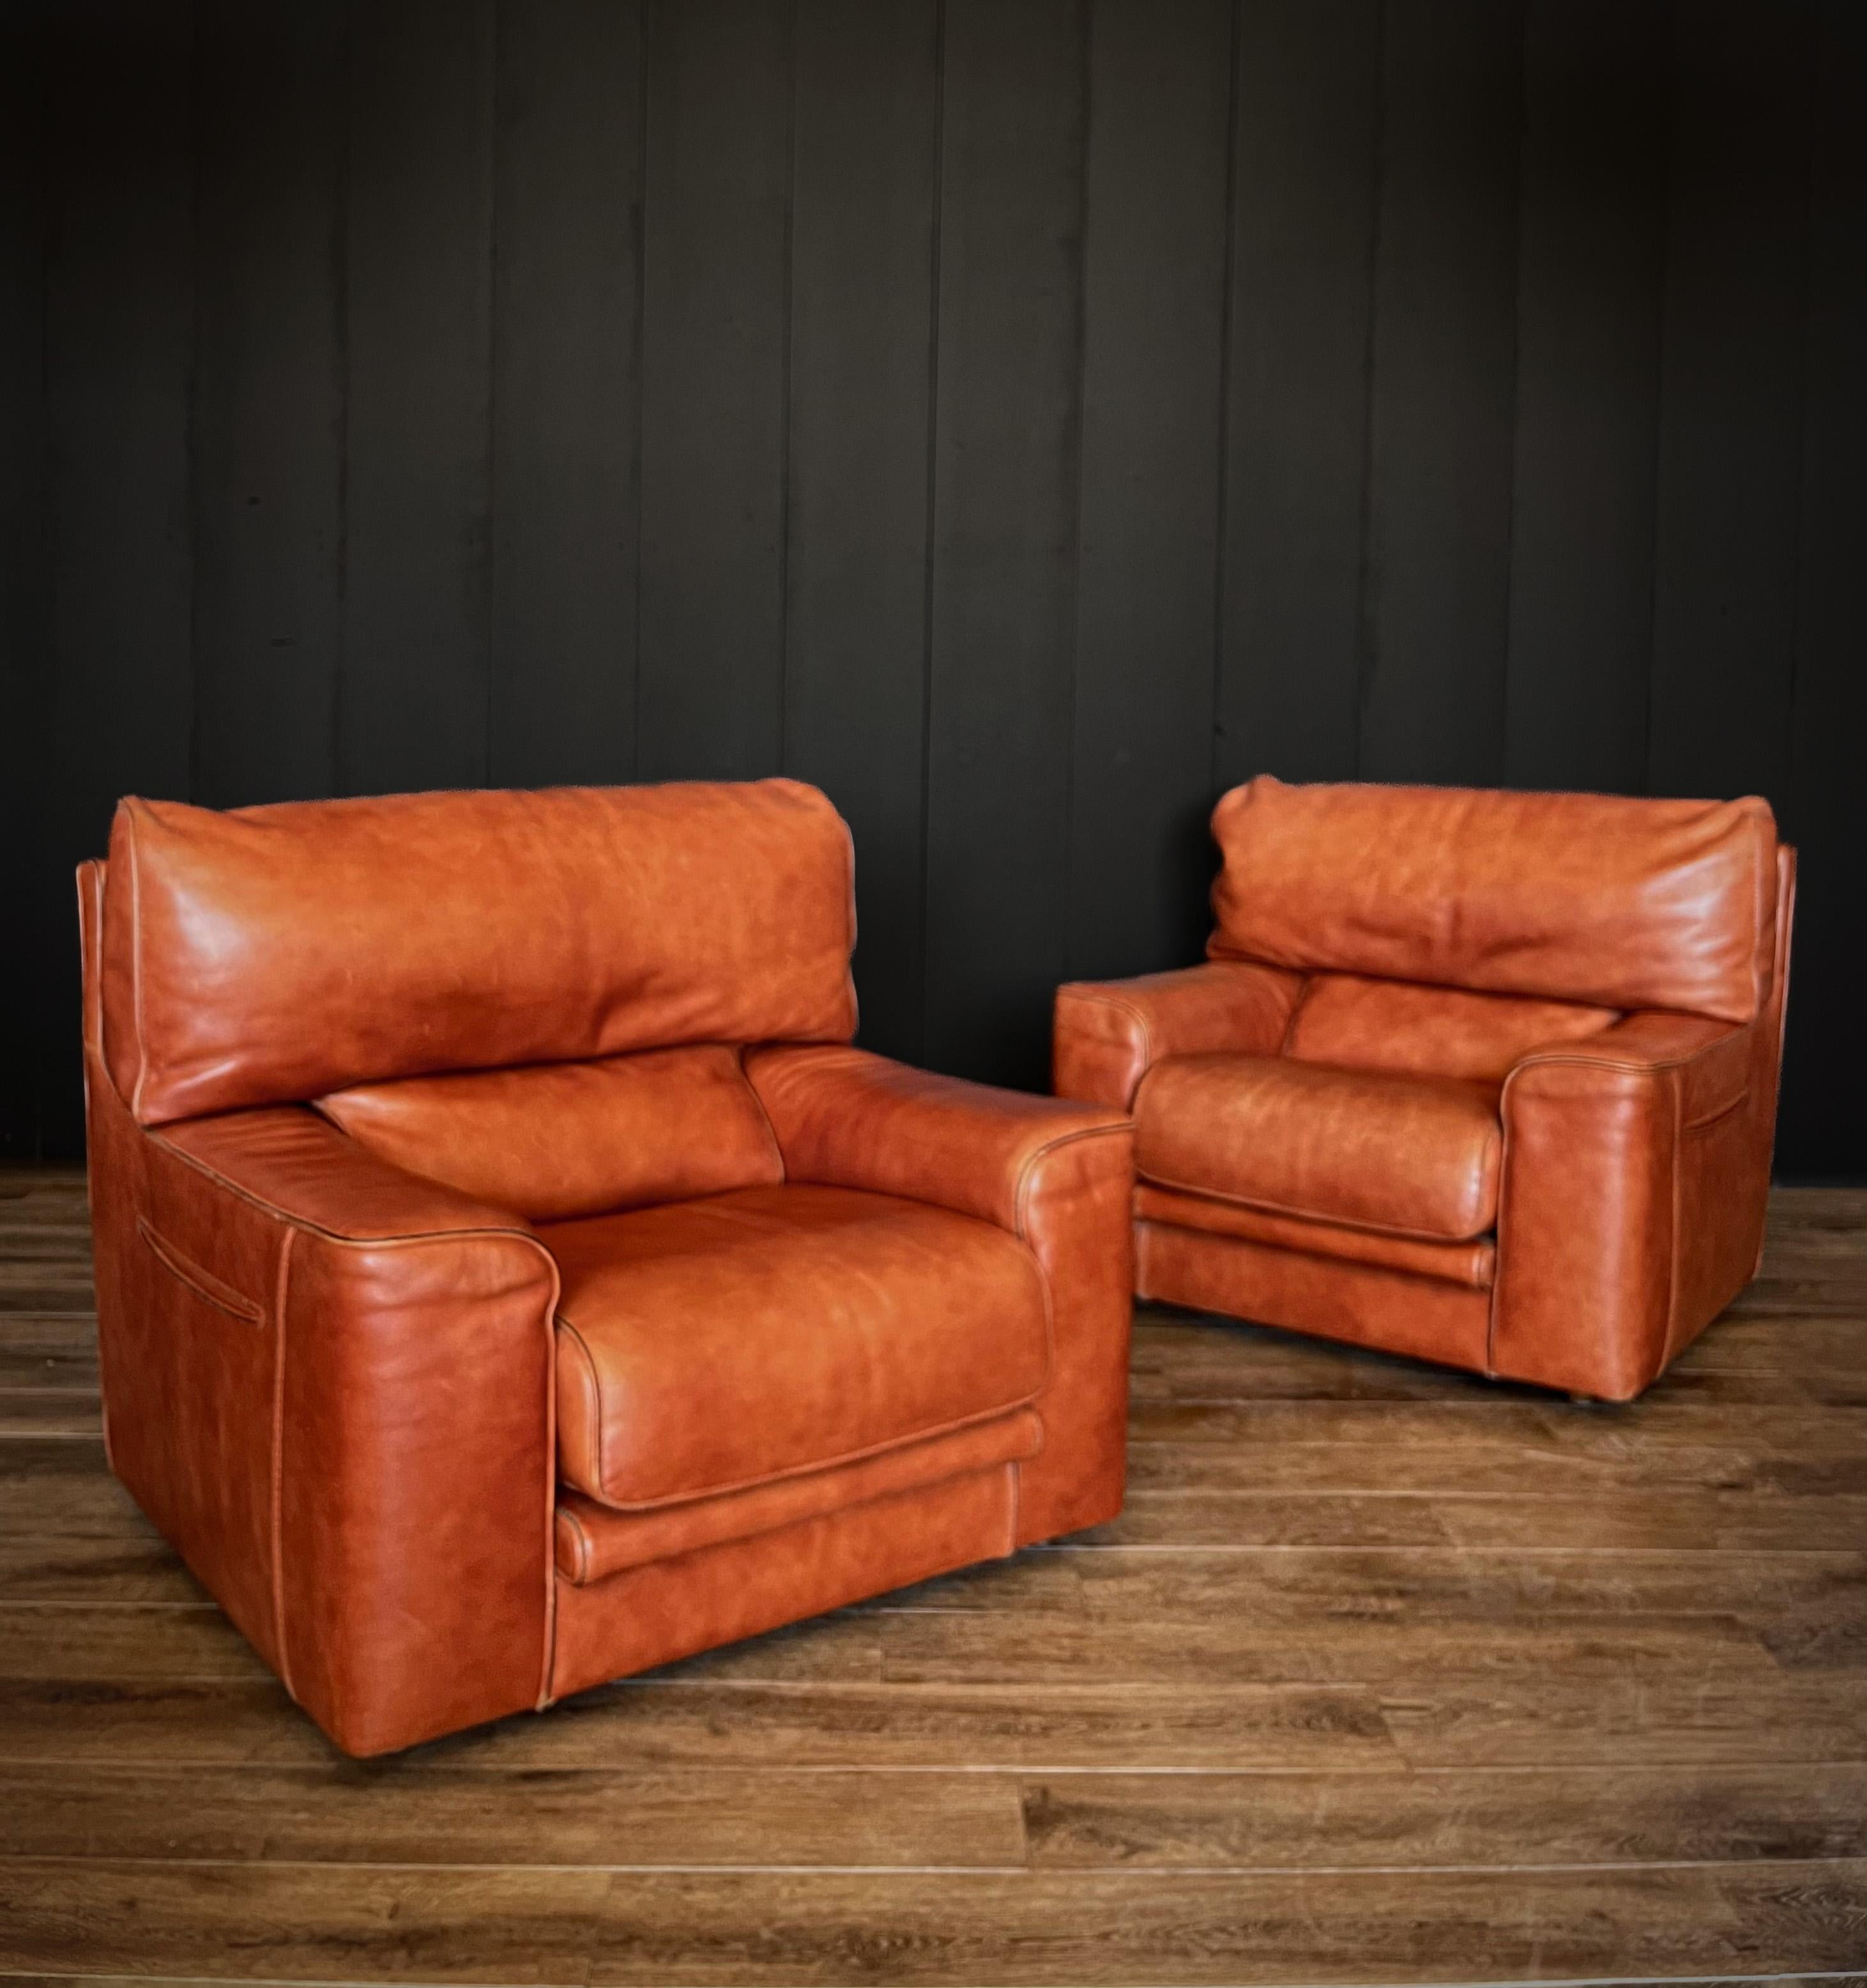 Faites l'expérience du luxe vintage avec cette paire de chaises longues en cuir Roche Bobois. Ces chaises, fabriquées avec précision, offrent un style intemporel et une fonctionnalité intelligente. Parées d'un cuir de qualité supérieure, elles